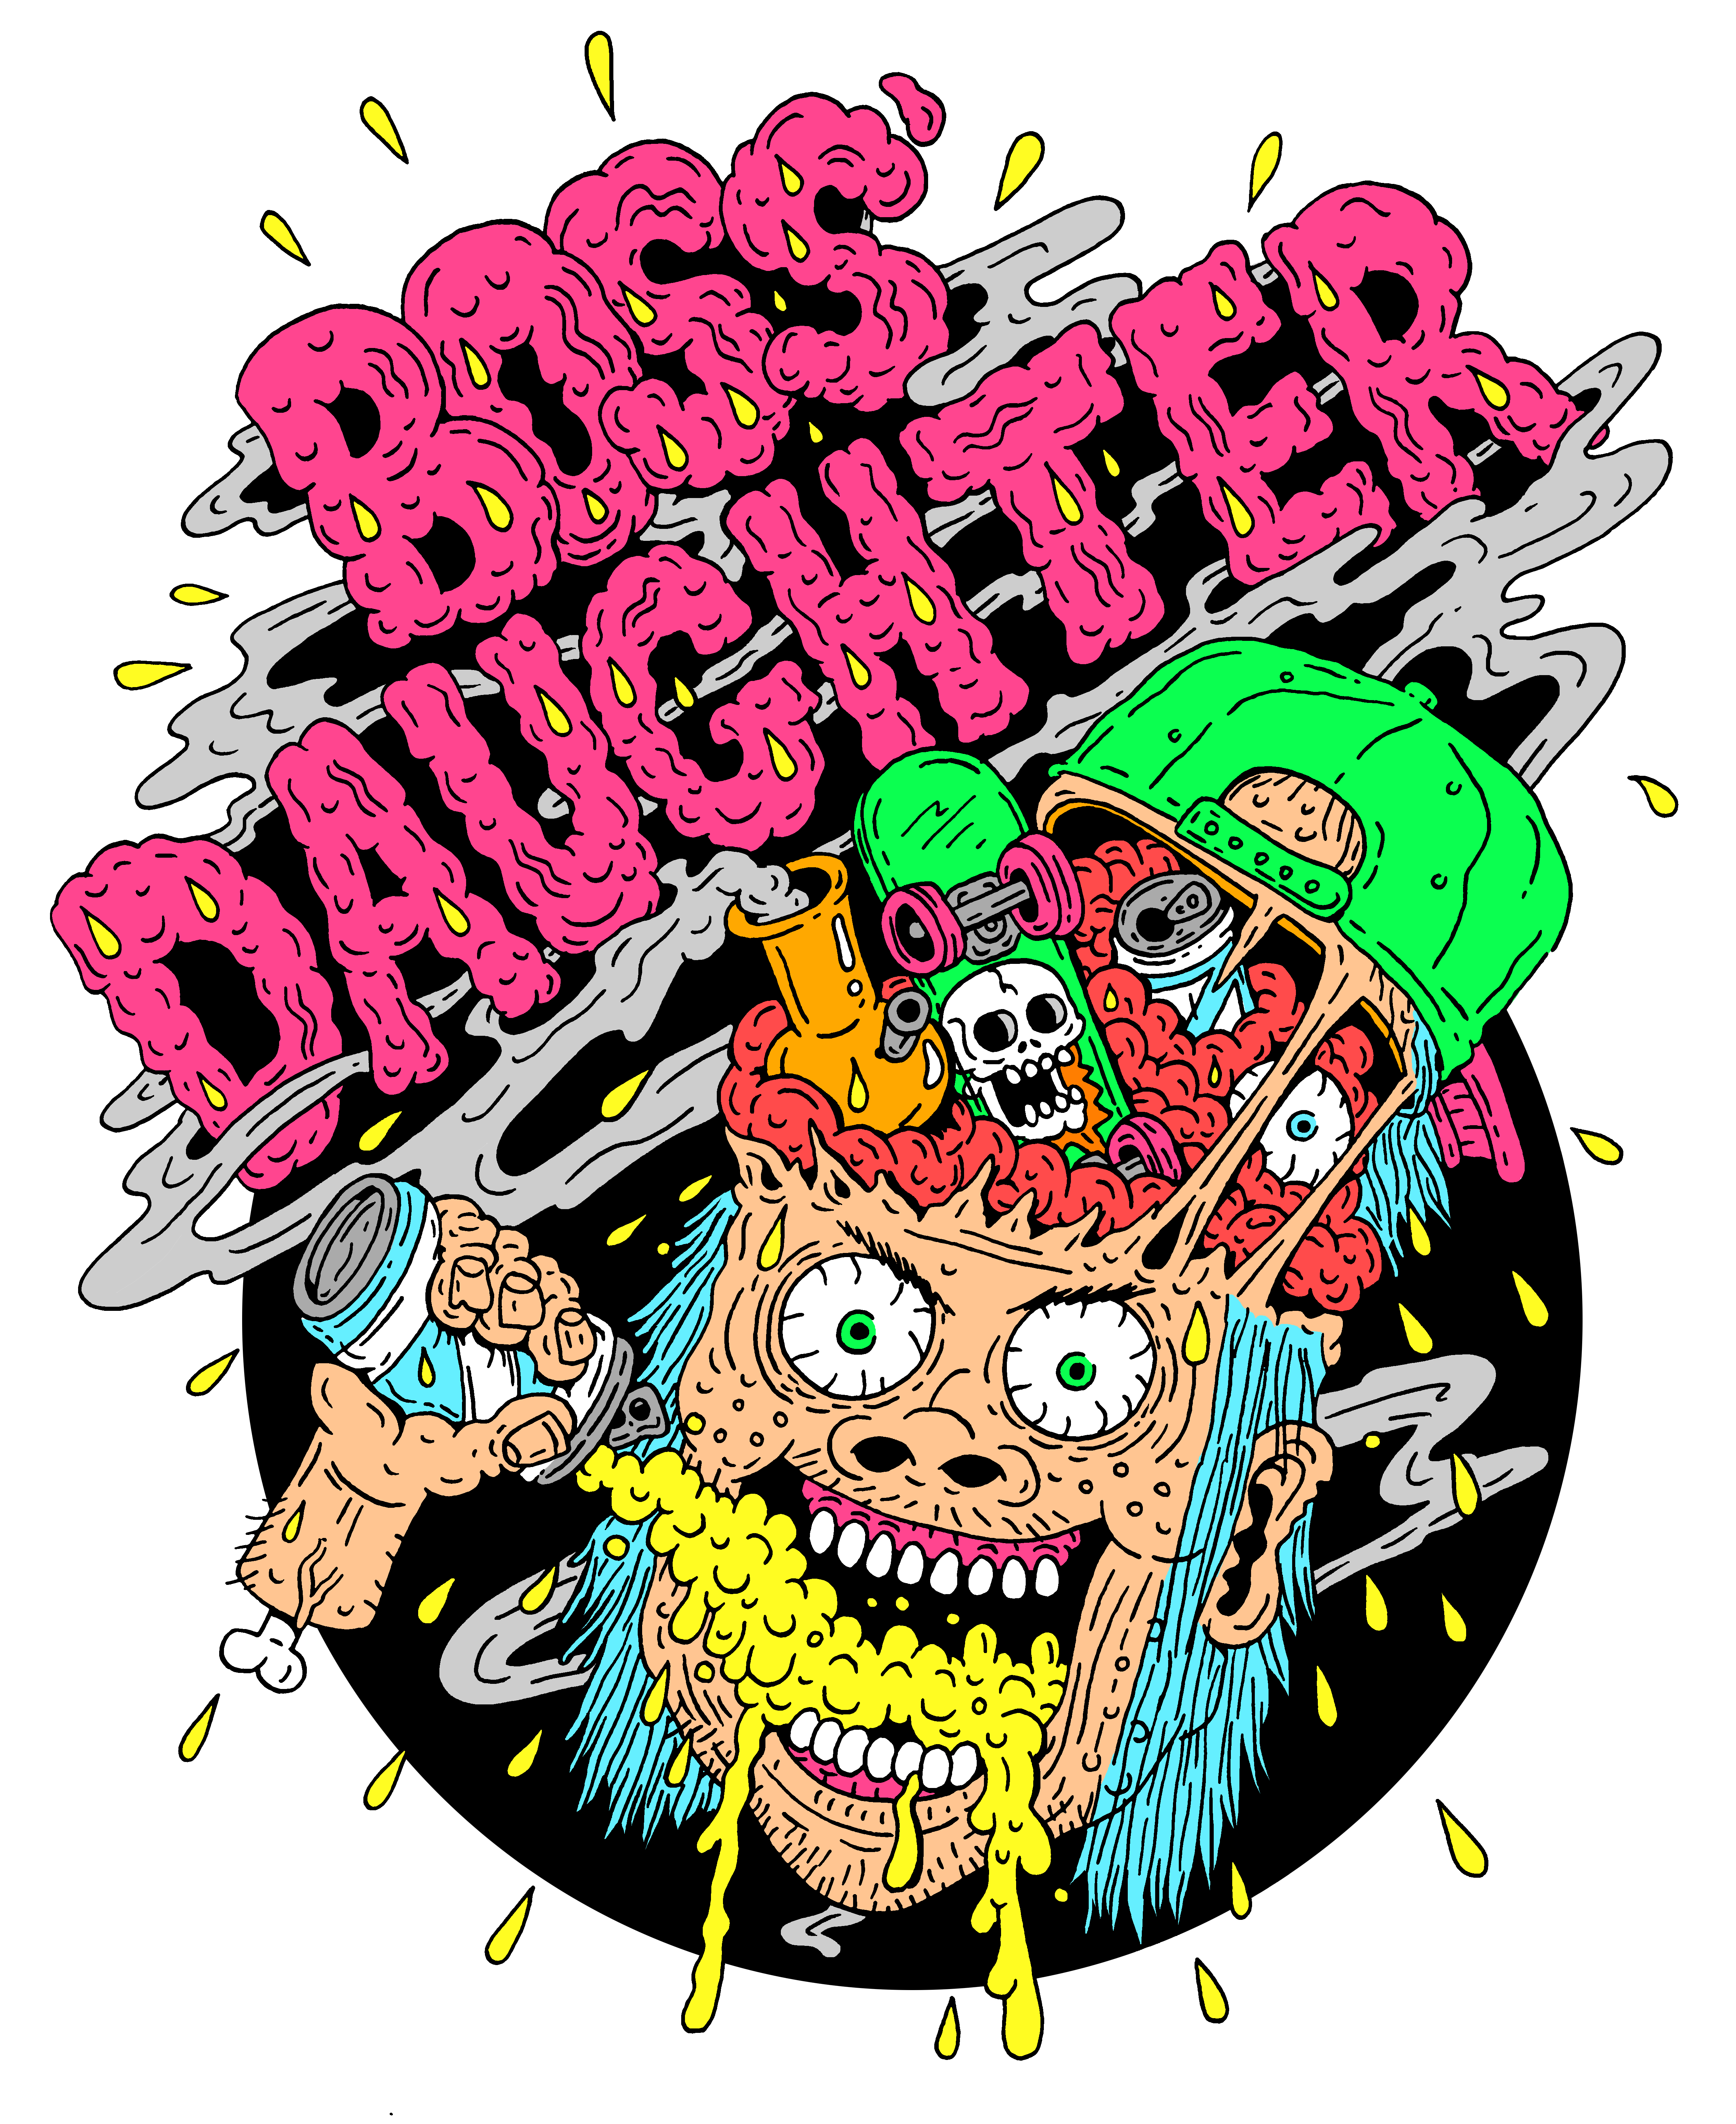 (c) Bossdaughter.com